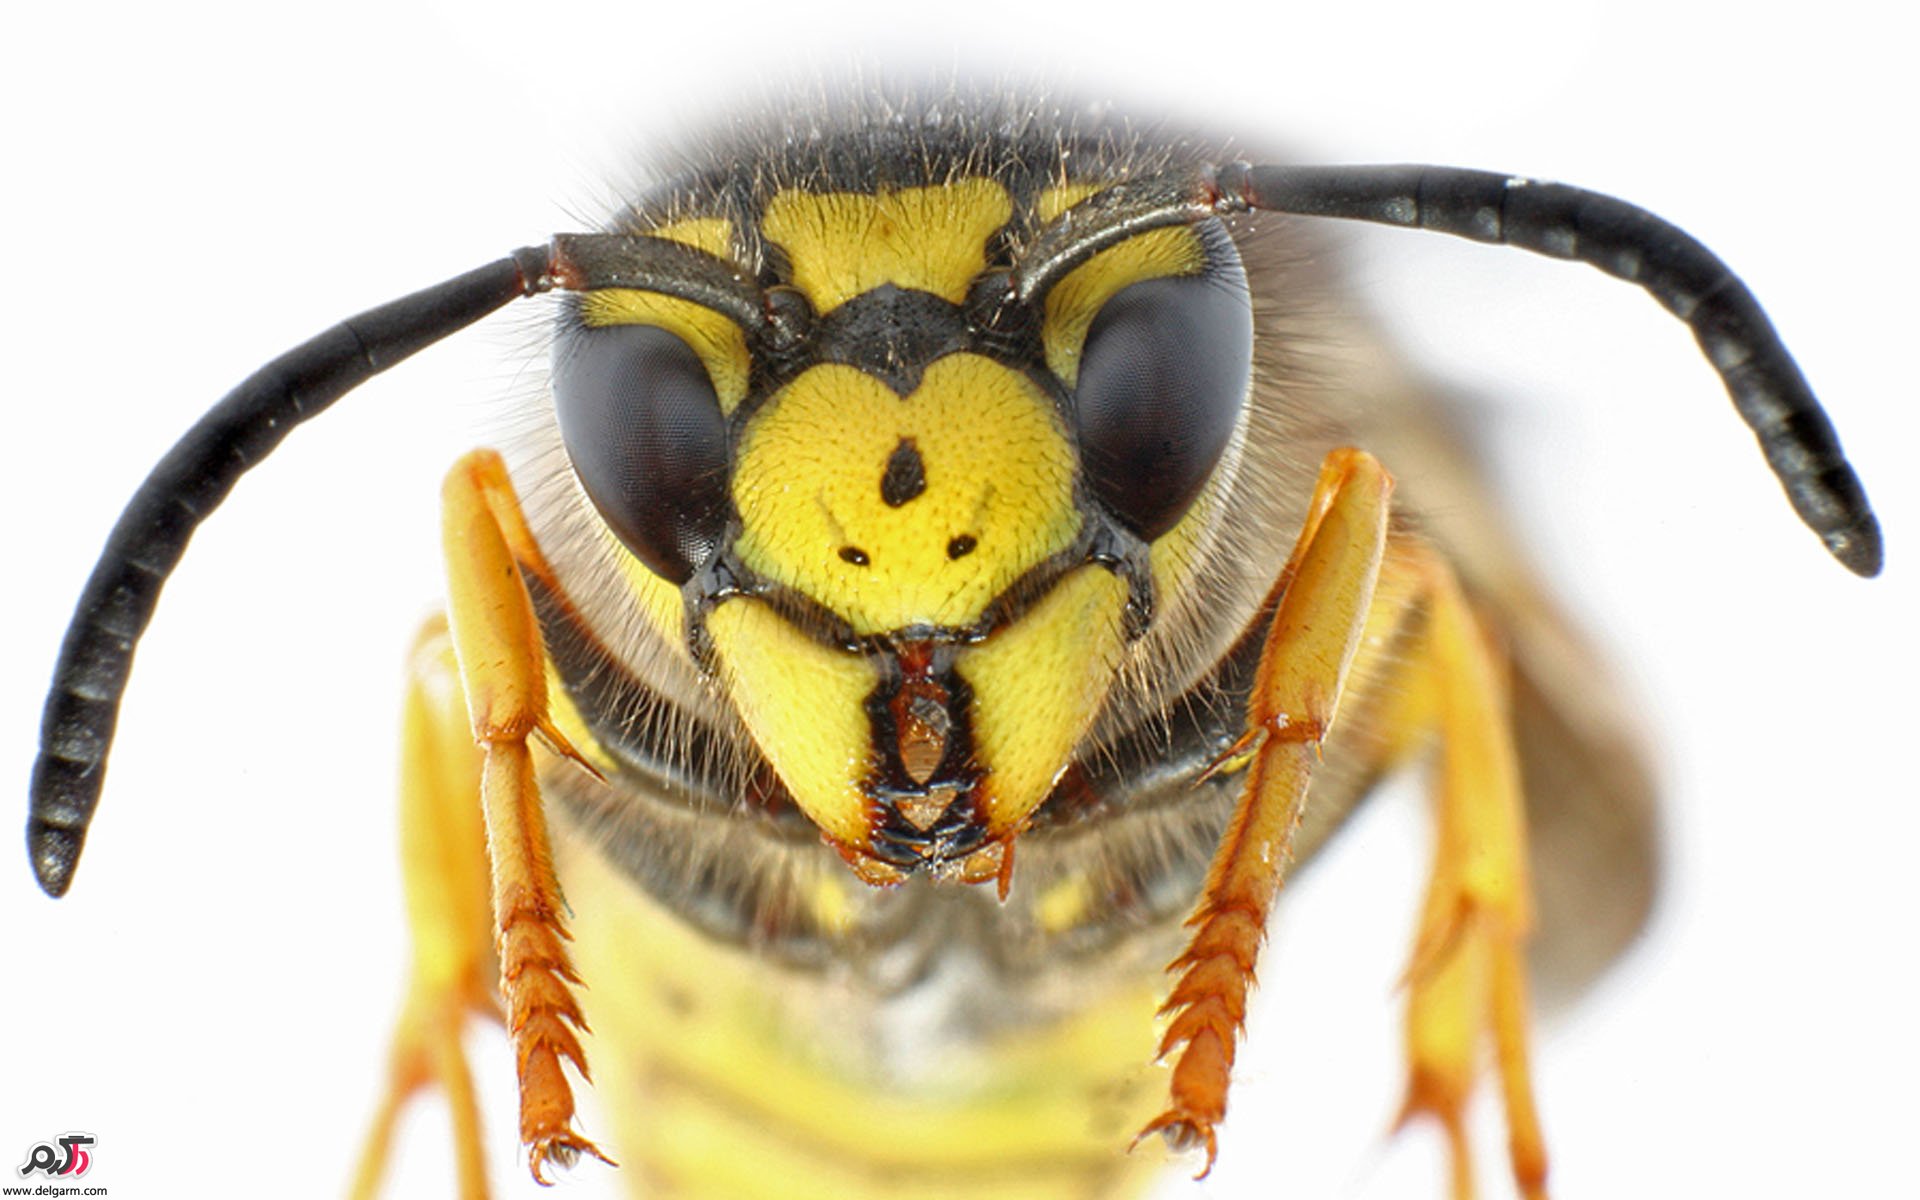  درمان خانگی نیش زنبور (درمان نیش زنبور با داروهای گیاهی)